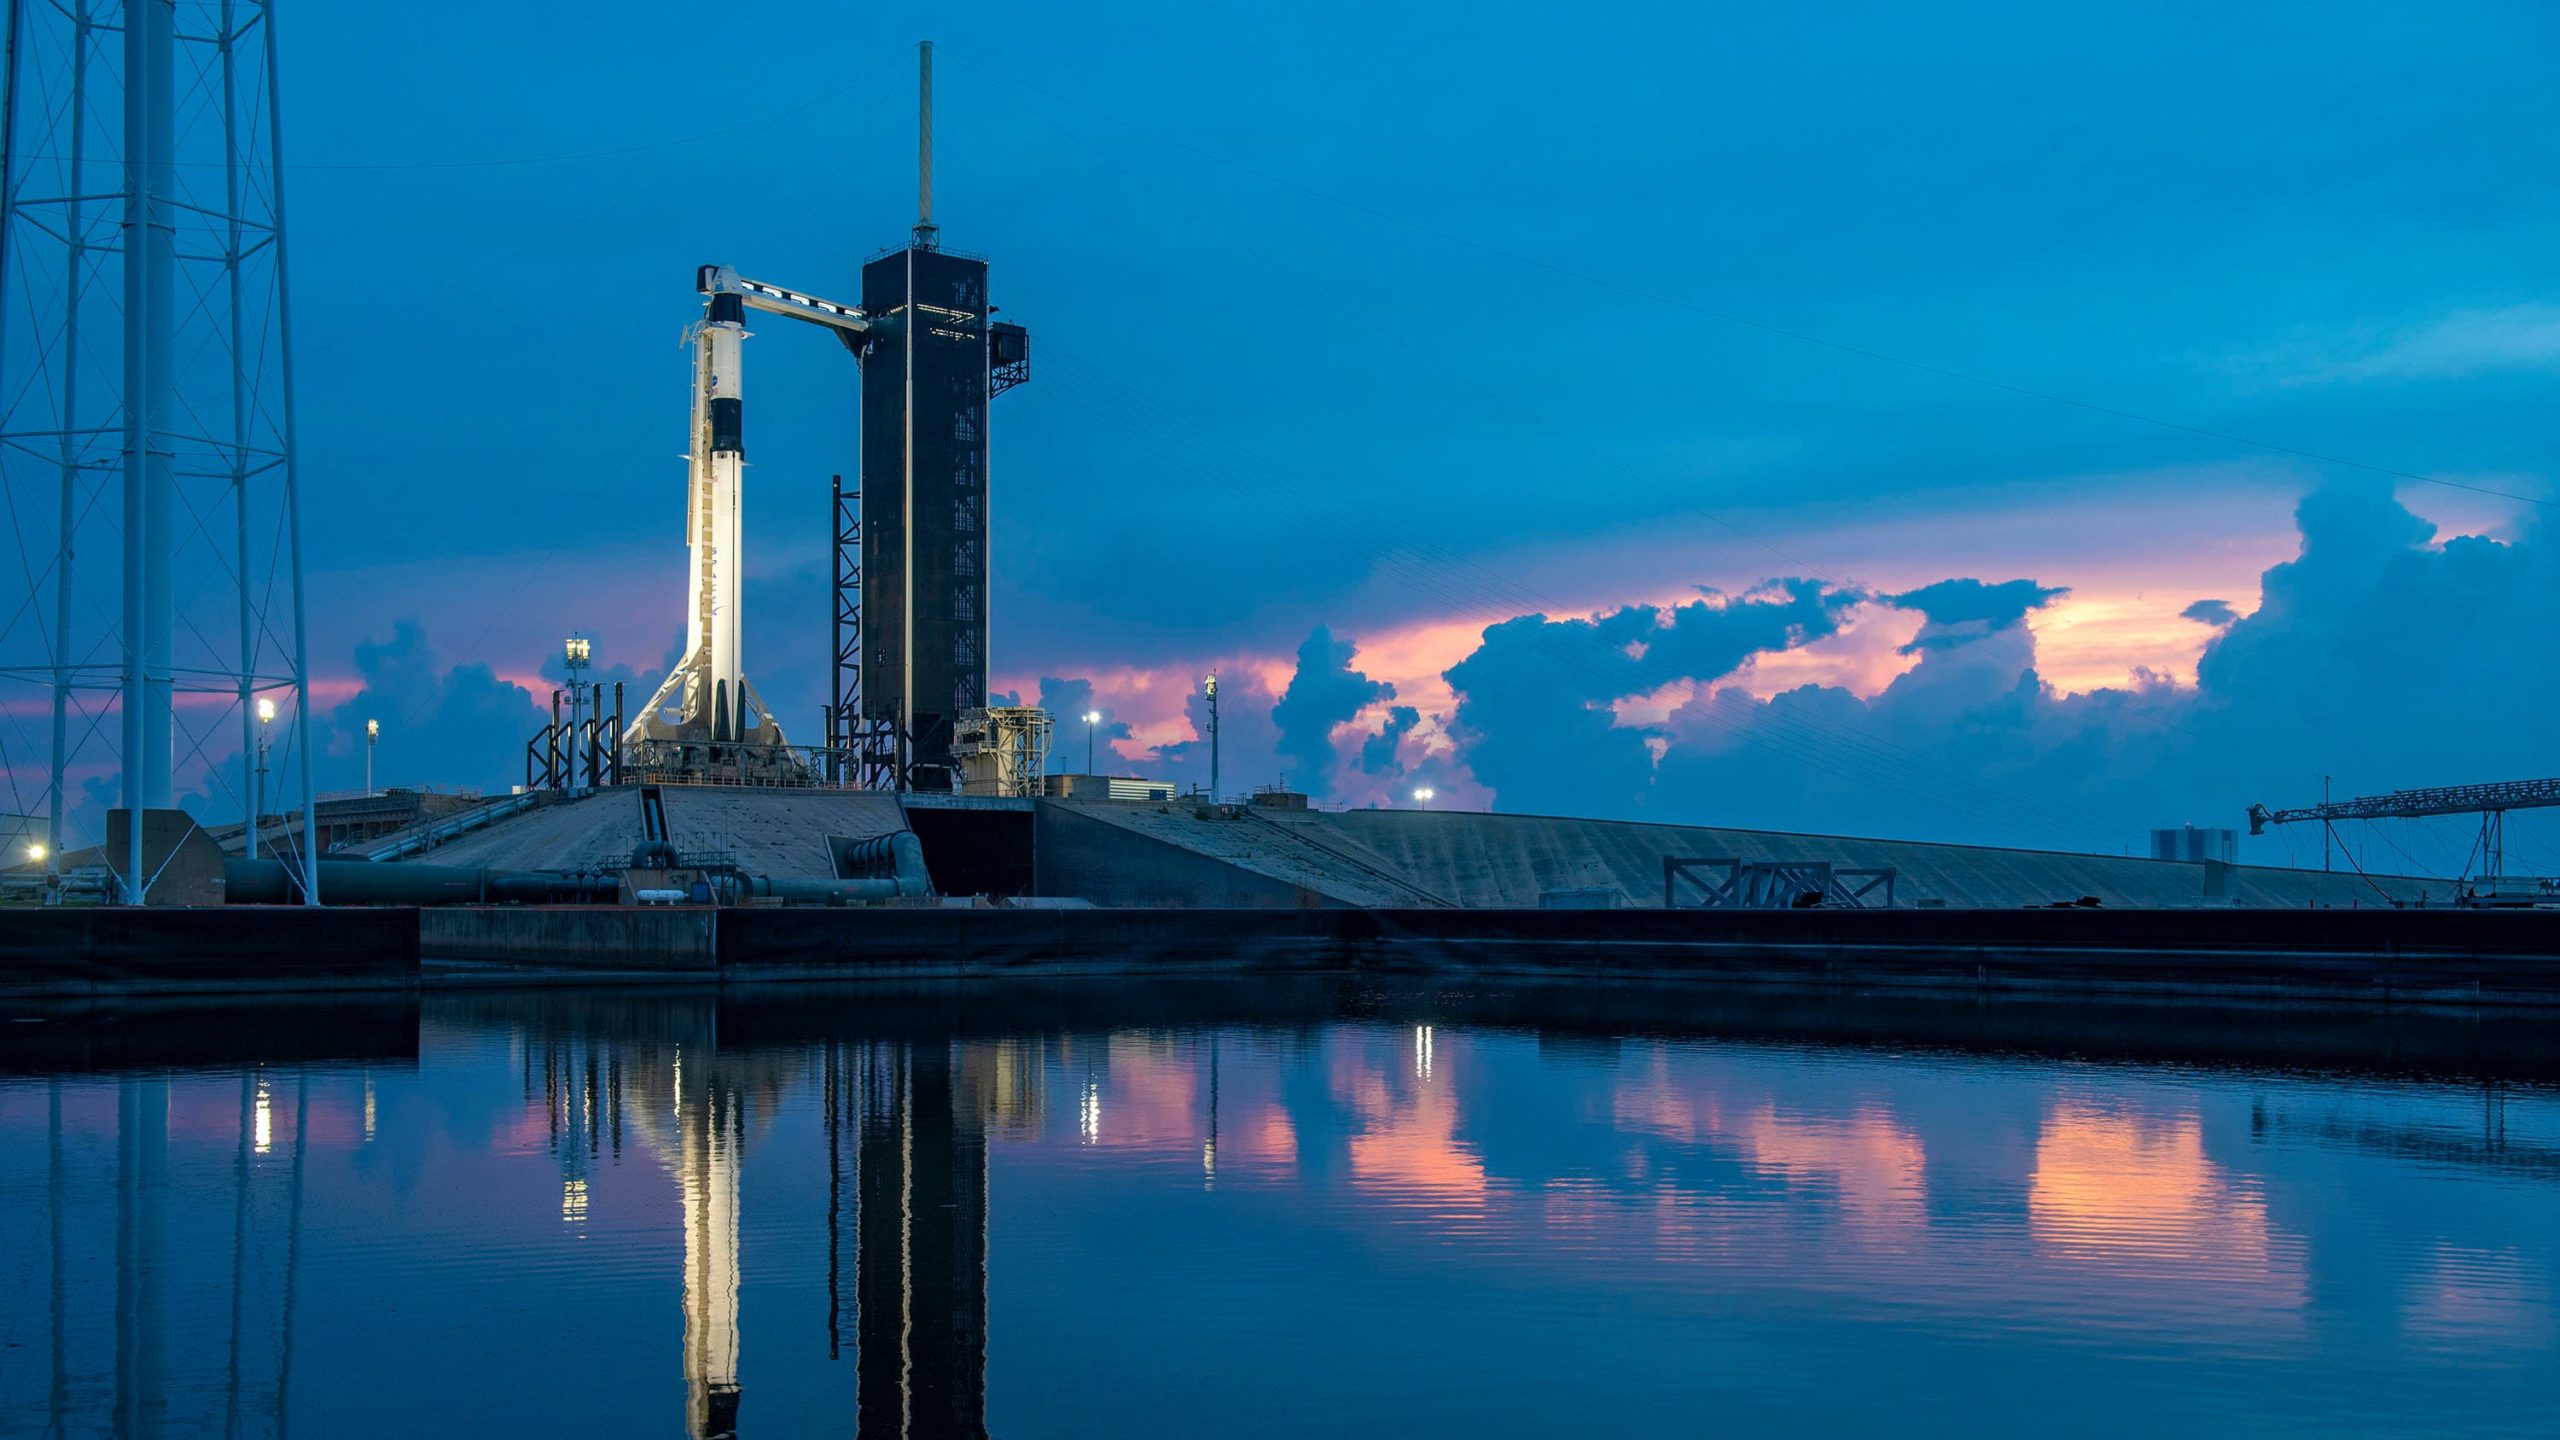 Imagem fornecida pela SpaceX do foguete Falcon 9 no Kennedy Space Center, em 26 de maio de 2020, no Cabo Canaveral, na Flórida. Crédito: SpaceX/Divulgação (Getty Images)